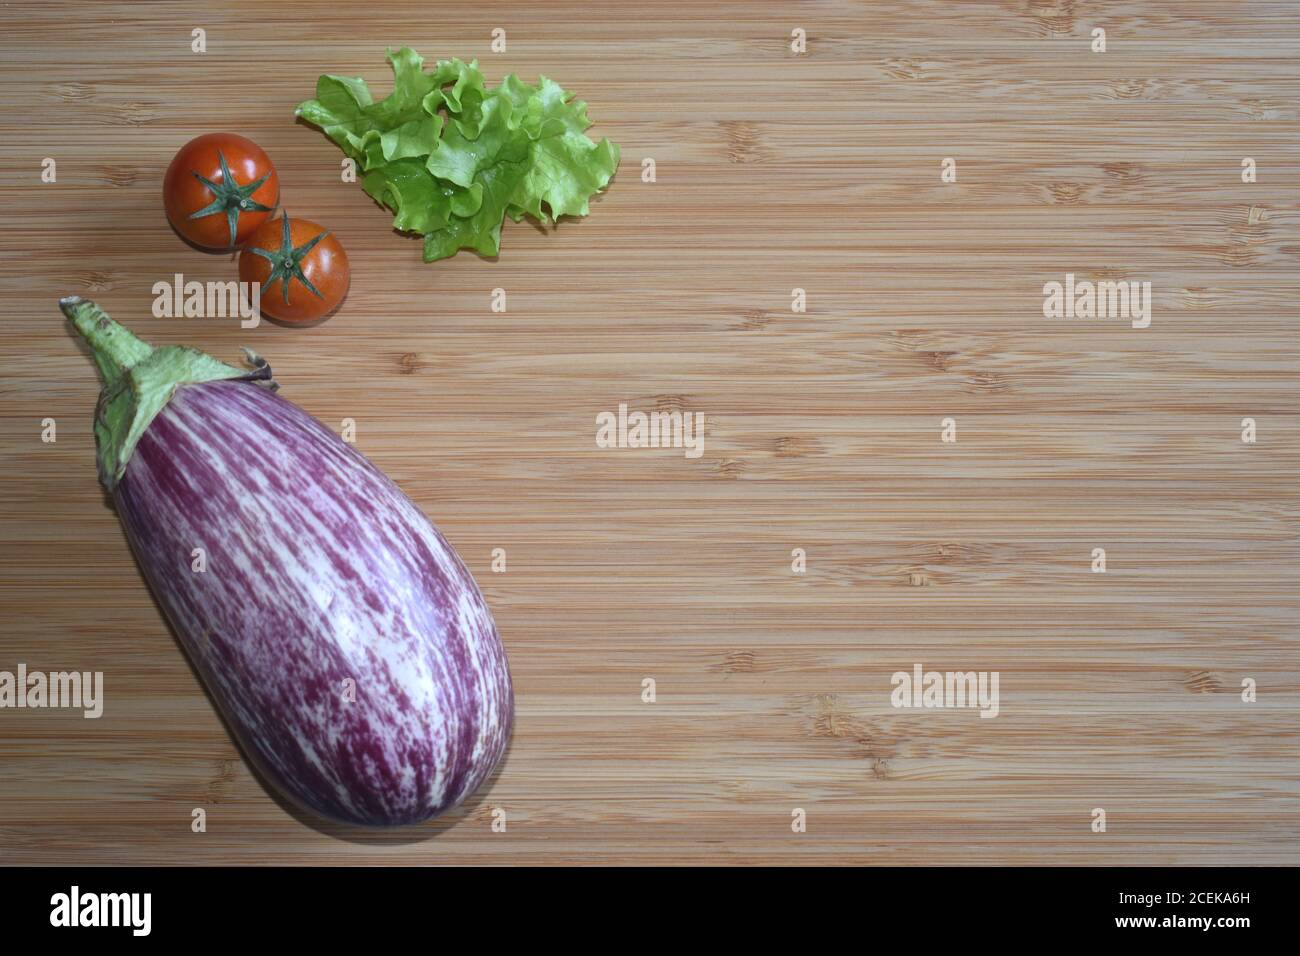 Frische ungekochte Graffiti Aubergine / Aubergine / Brinjal mit Tomaten und Salat, auf Holzschneidebrett. Kopieren Sie den Platz auf die rechte Seite. Stockfoto